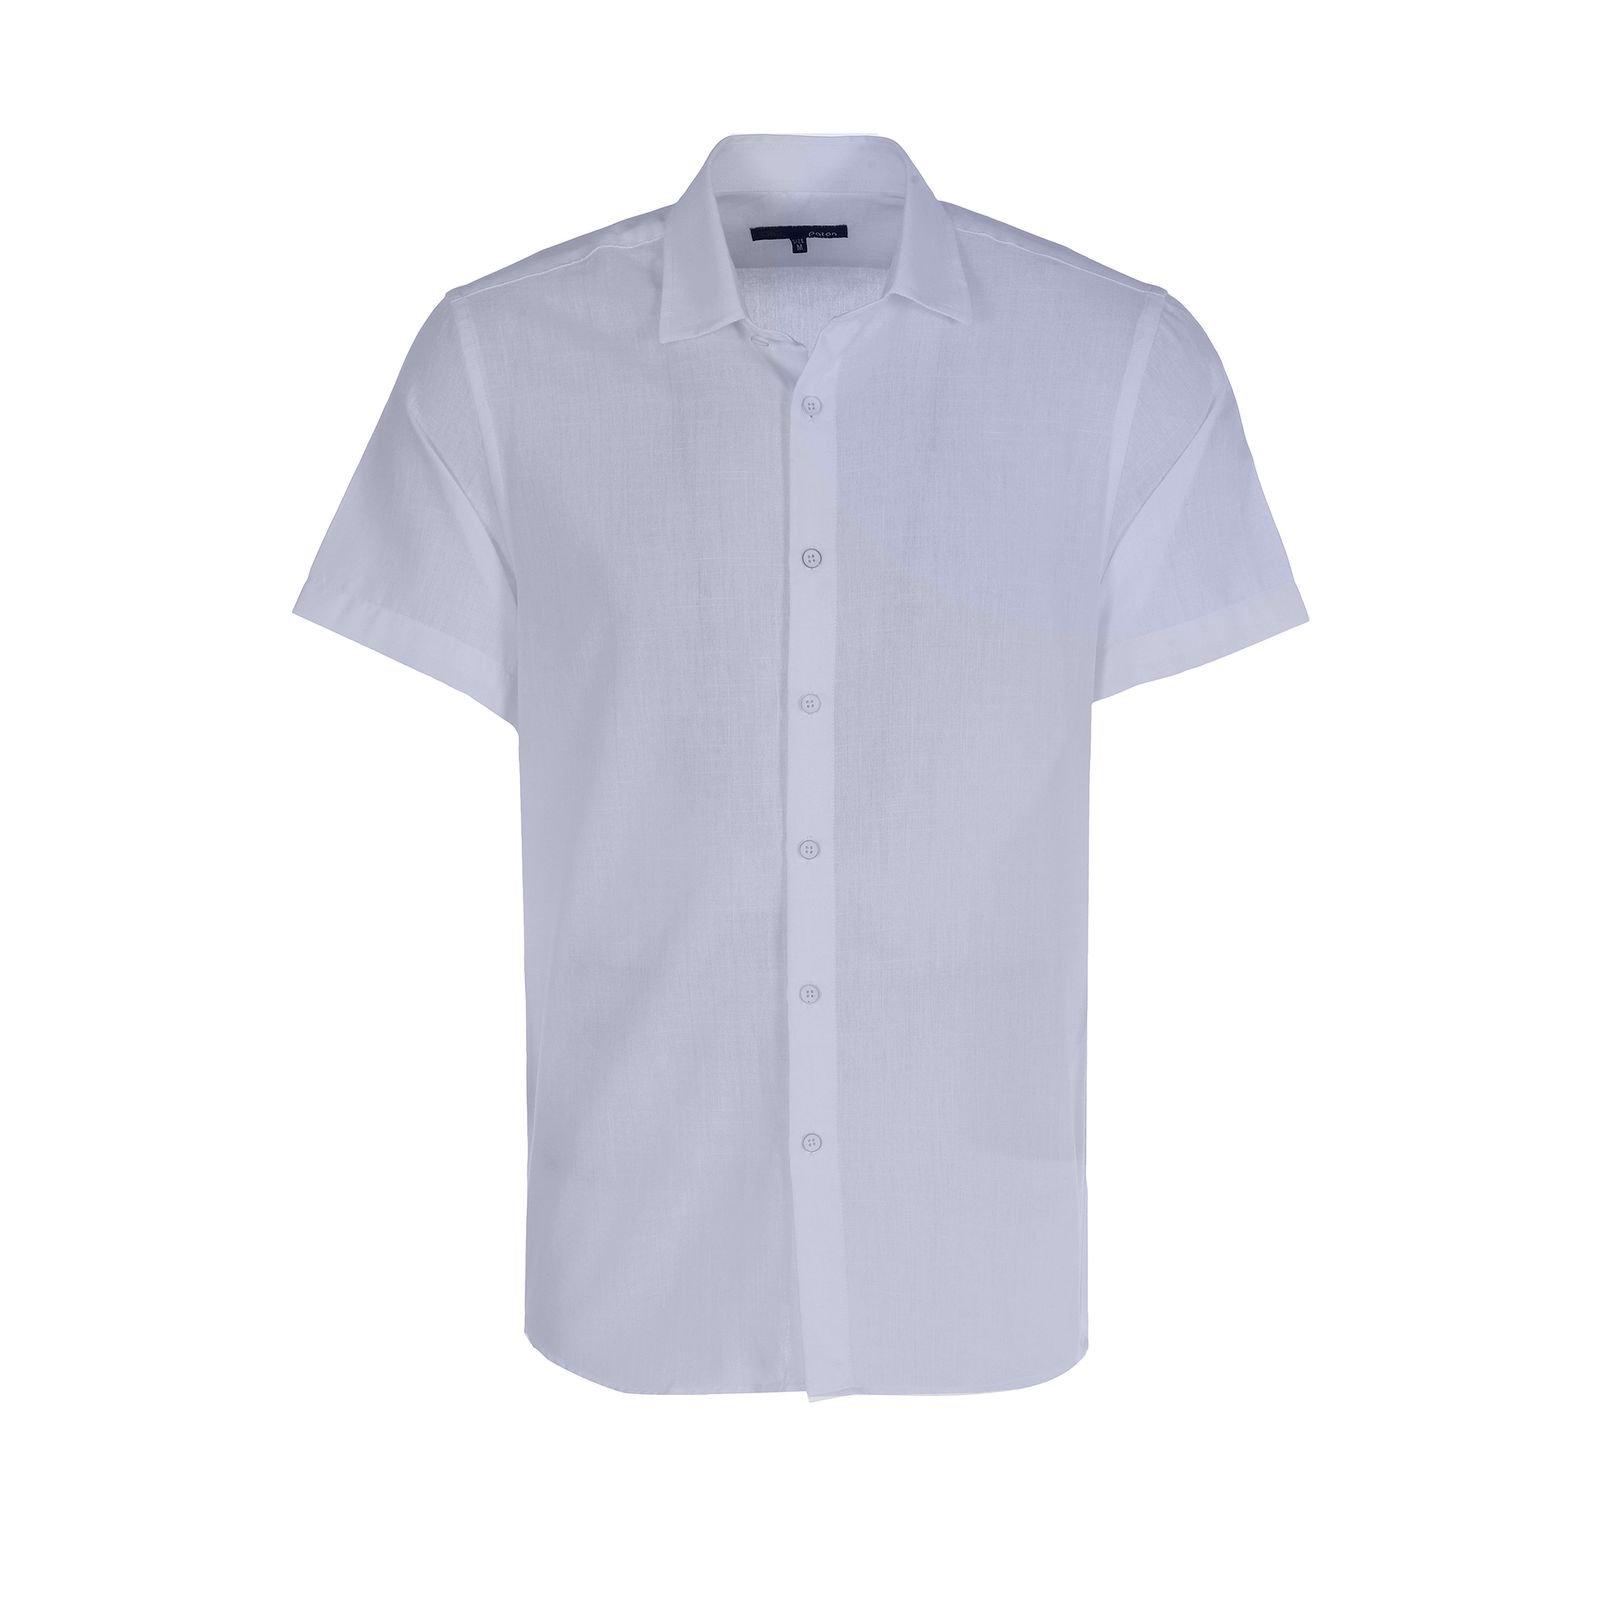 پیراهن آستین کوتاه مردانه پاتن جامه مدل 121721010127000 رنگ سفید -  - 1